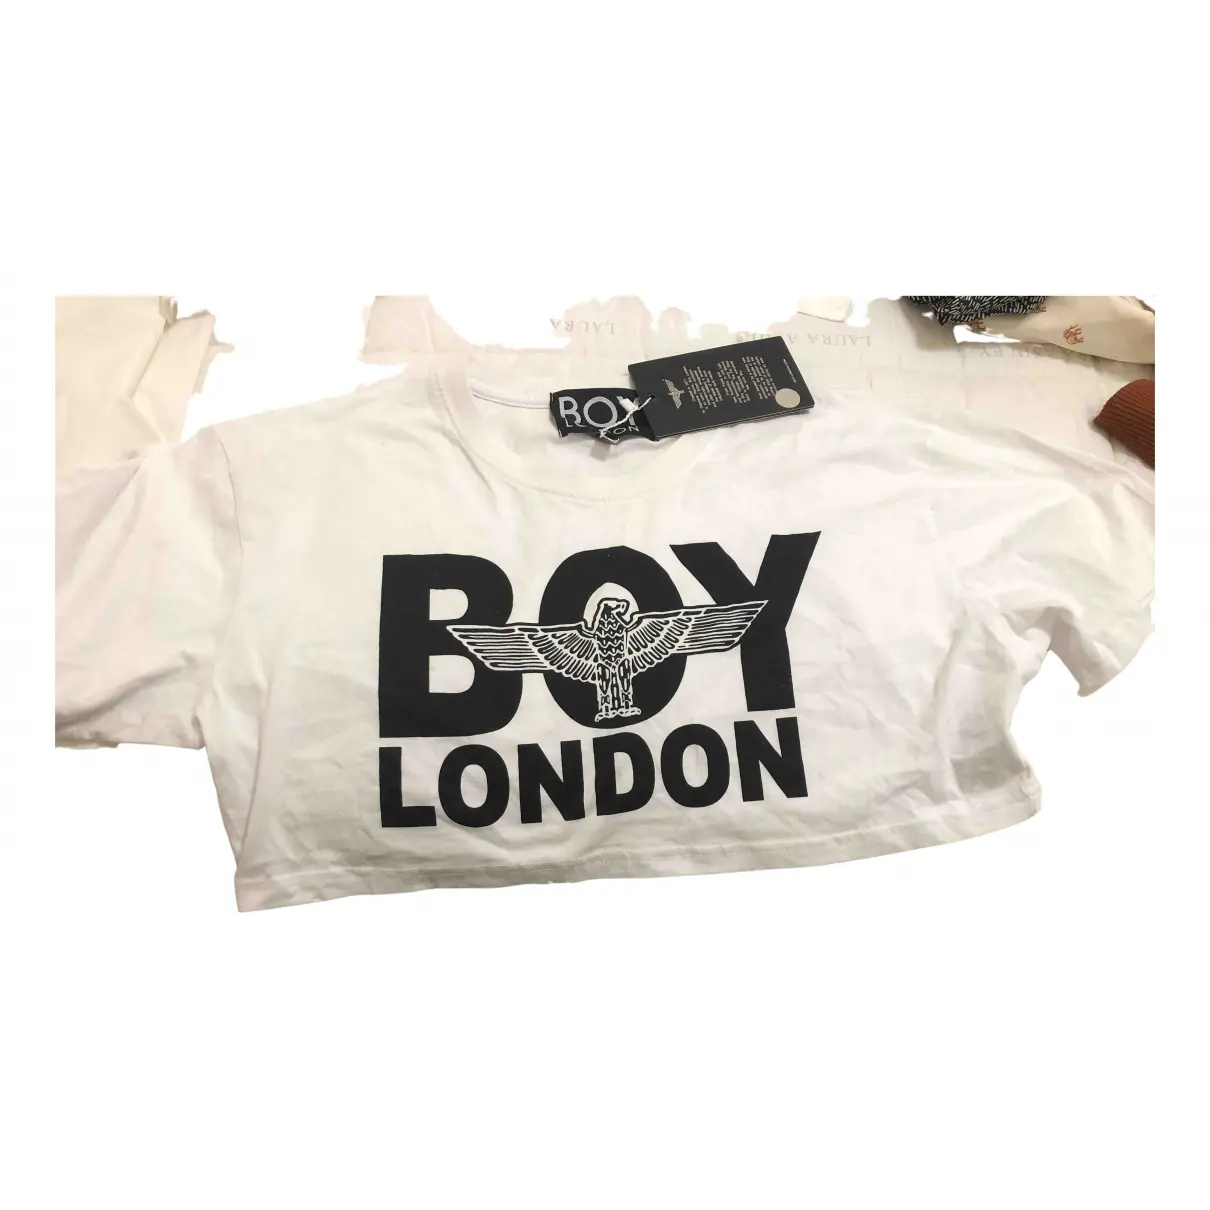 White Cotton Top Boy London